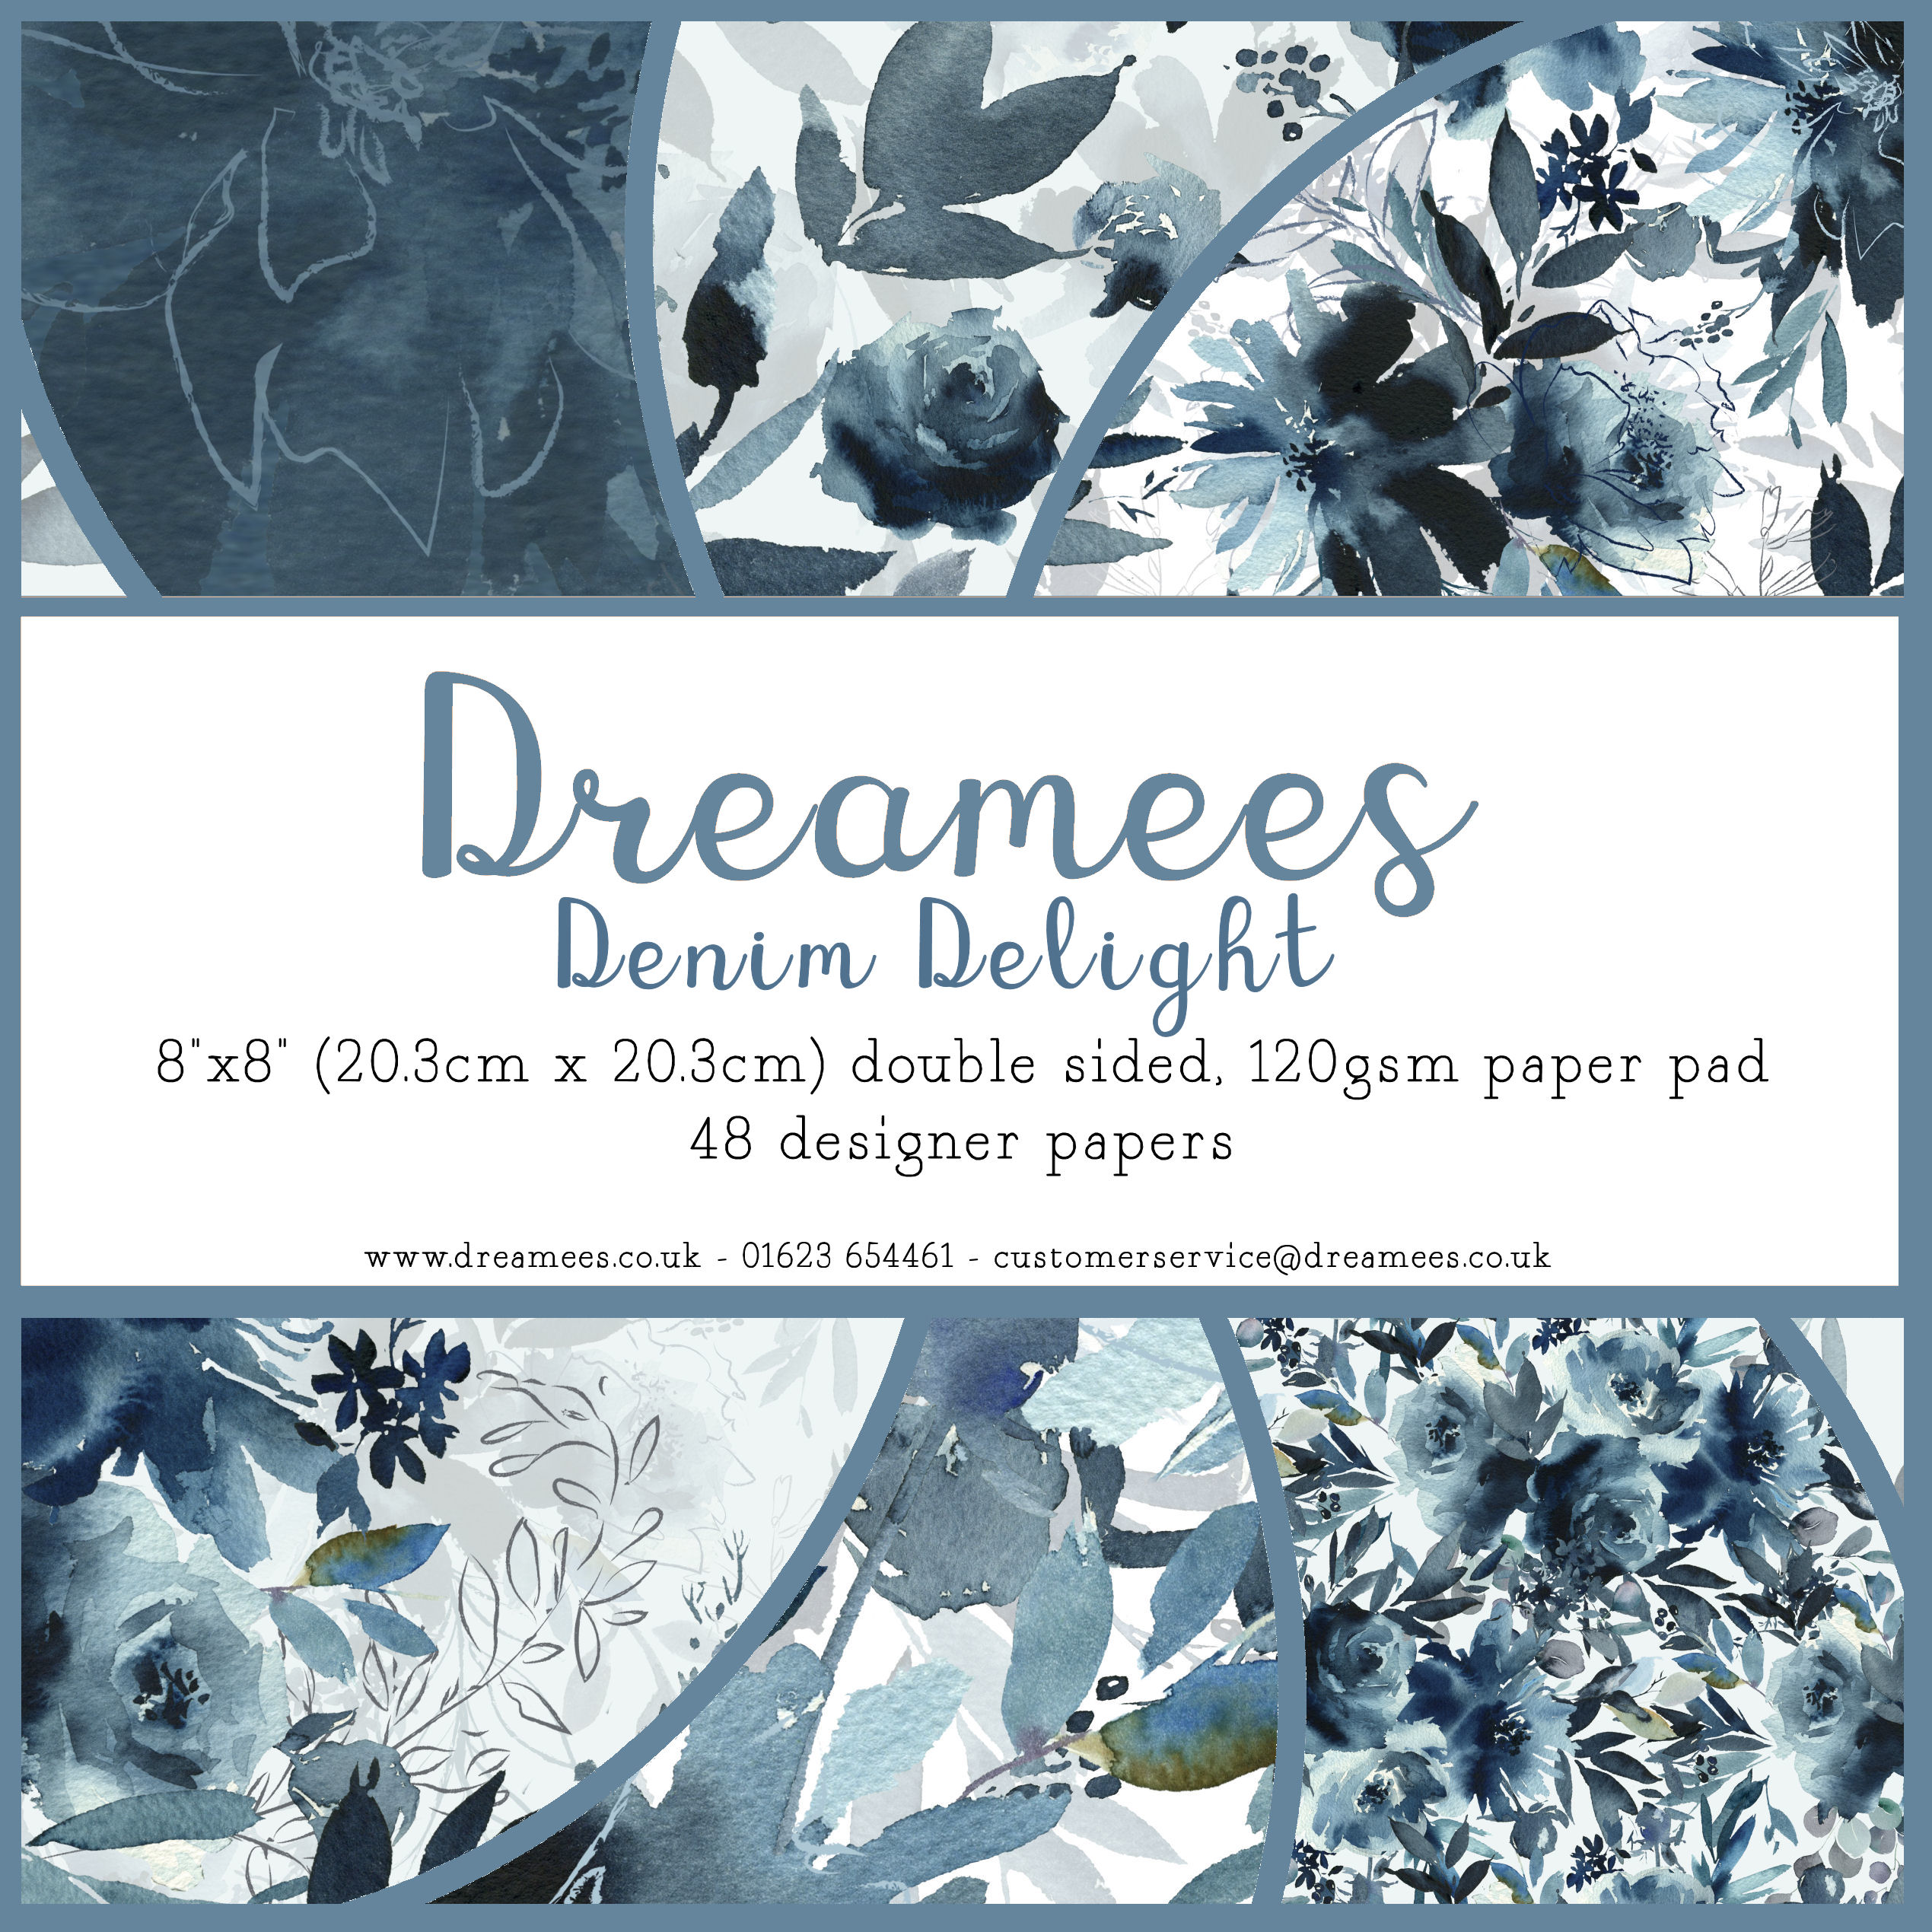 Dreamees Denim Delight 8x8 Paper Pad